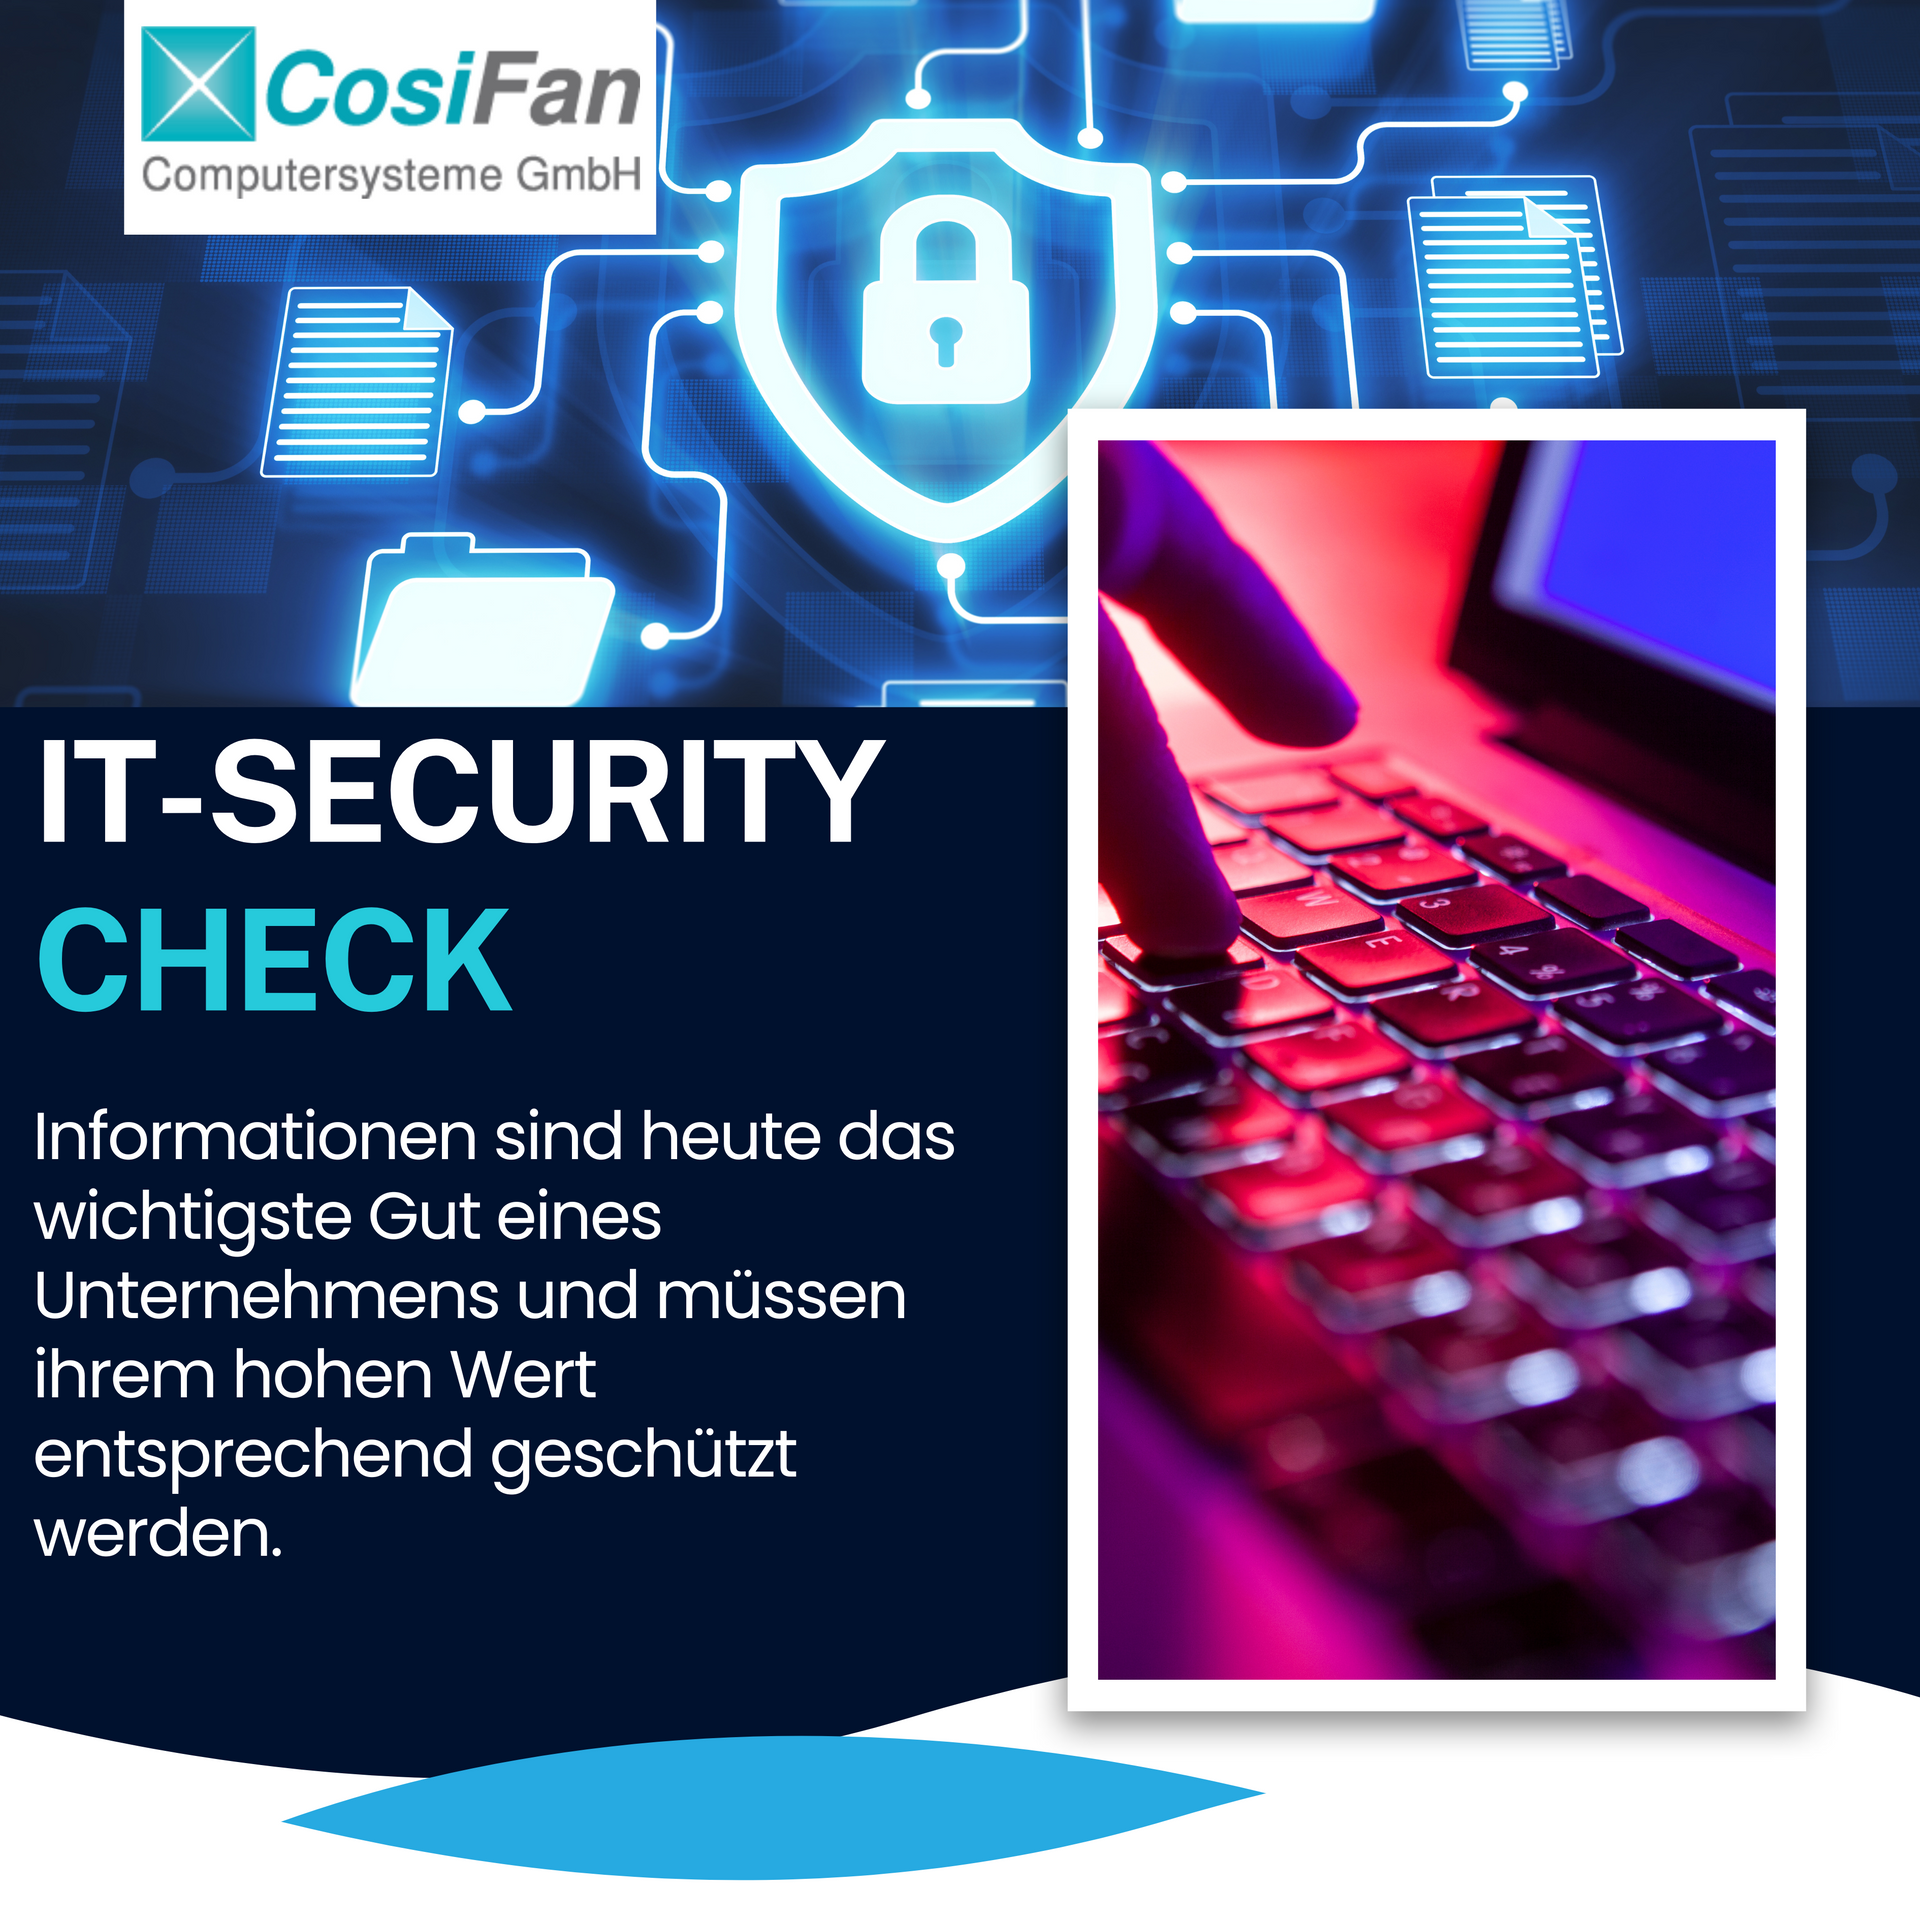 IT-Security Check - Informationen sind heute das wichtigste Gut eines Unternehmens und müssen ihrem hohen Wert entsprechend geschützt werden